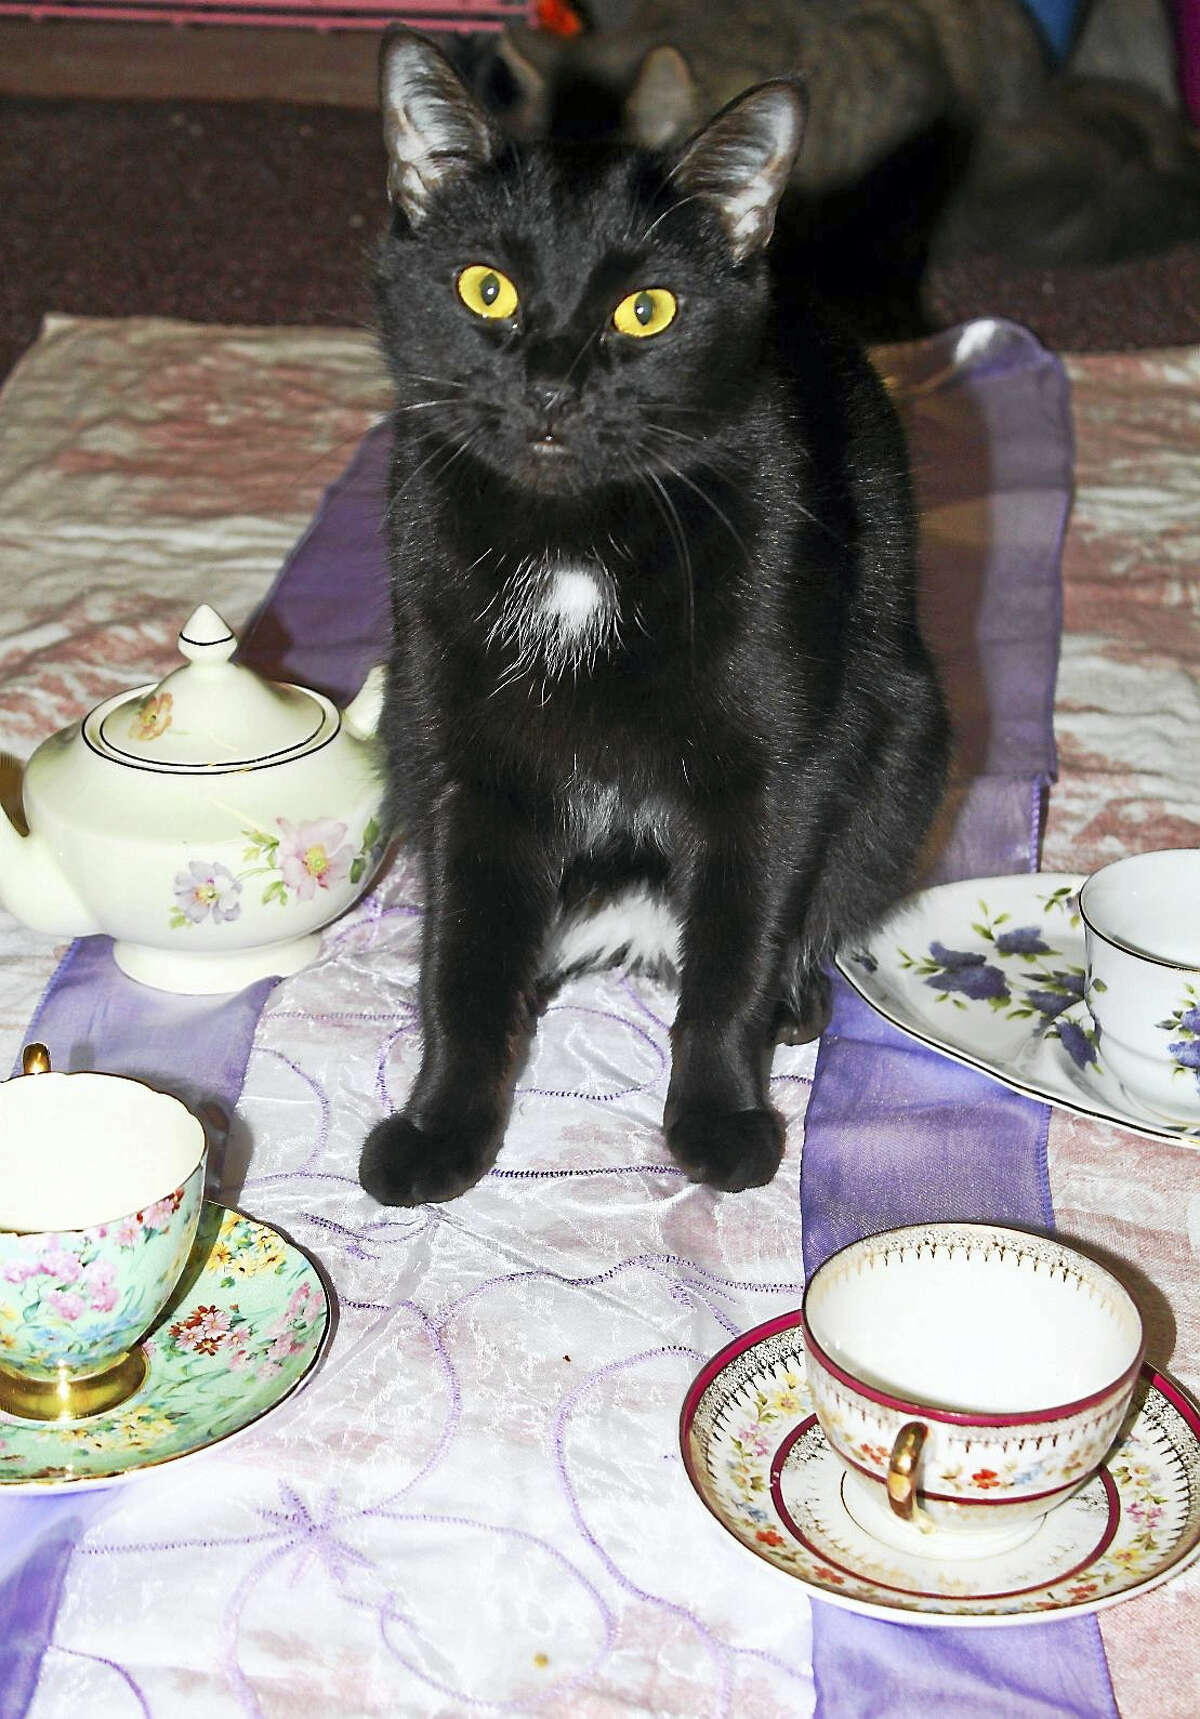 Artemis is all set for “Teacups & Catwalk.”